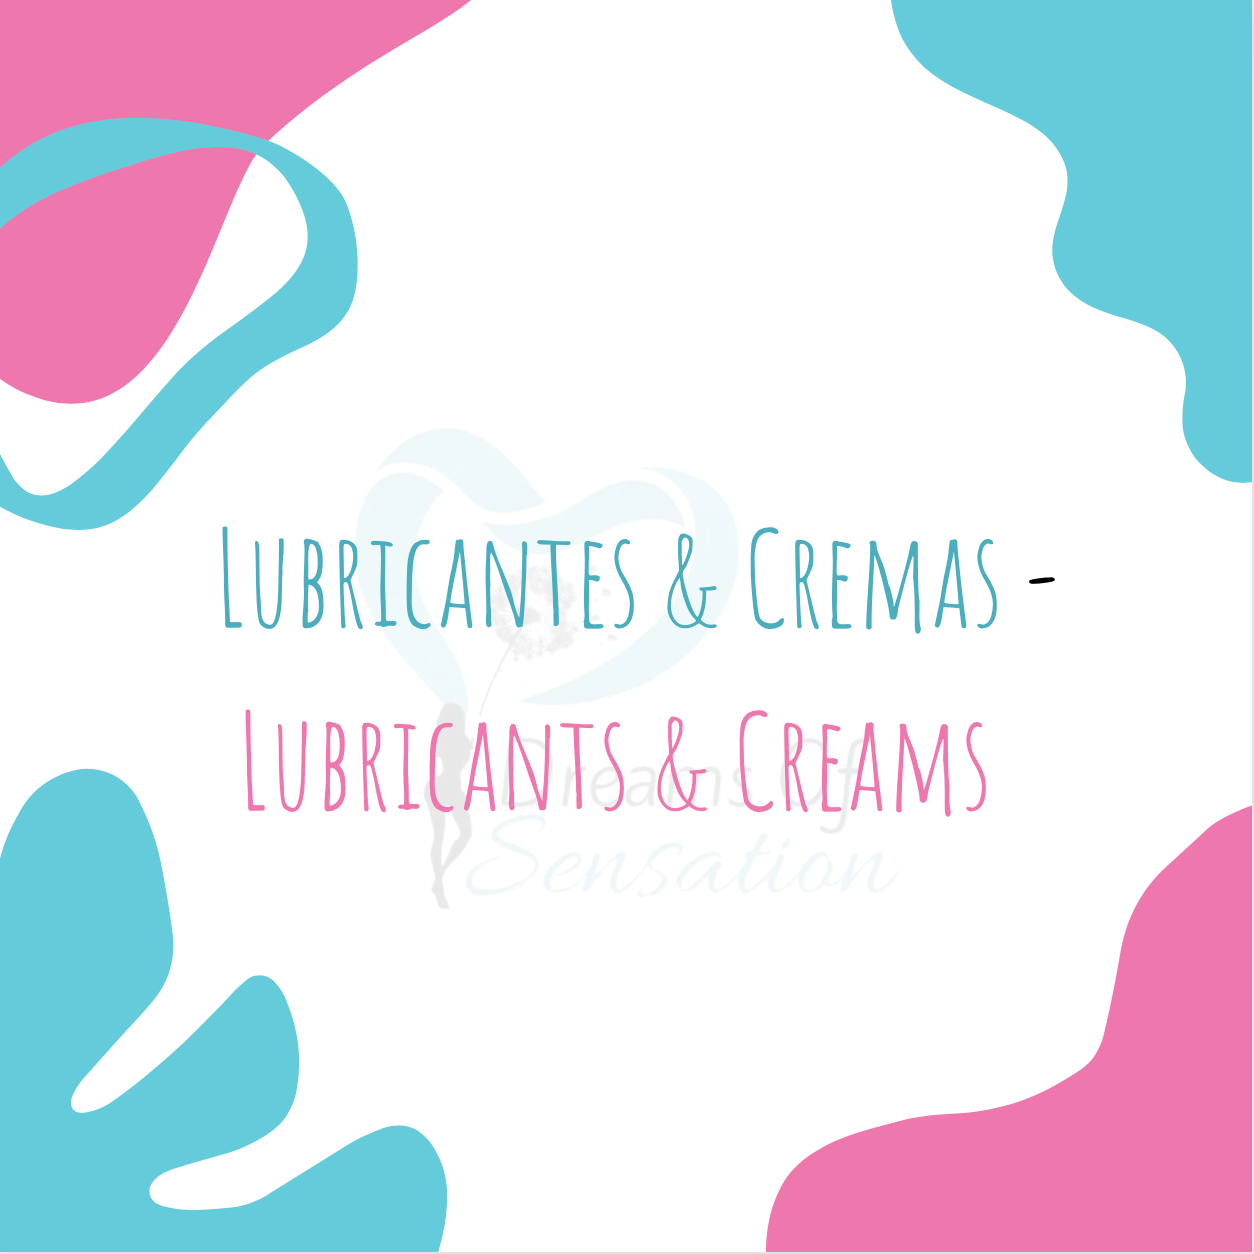 Lubricantes & Cremas - Lubricants & Creams